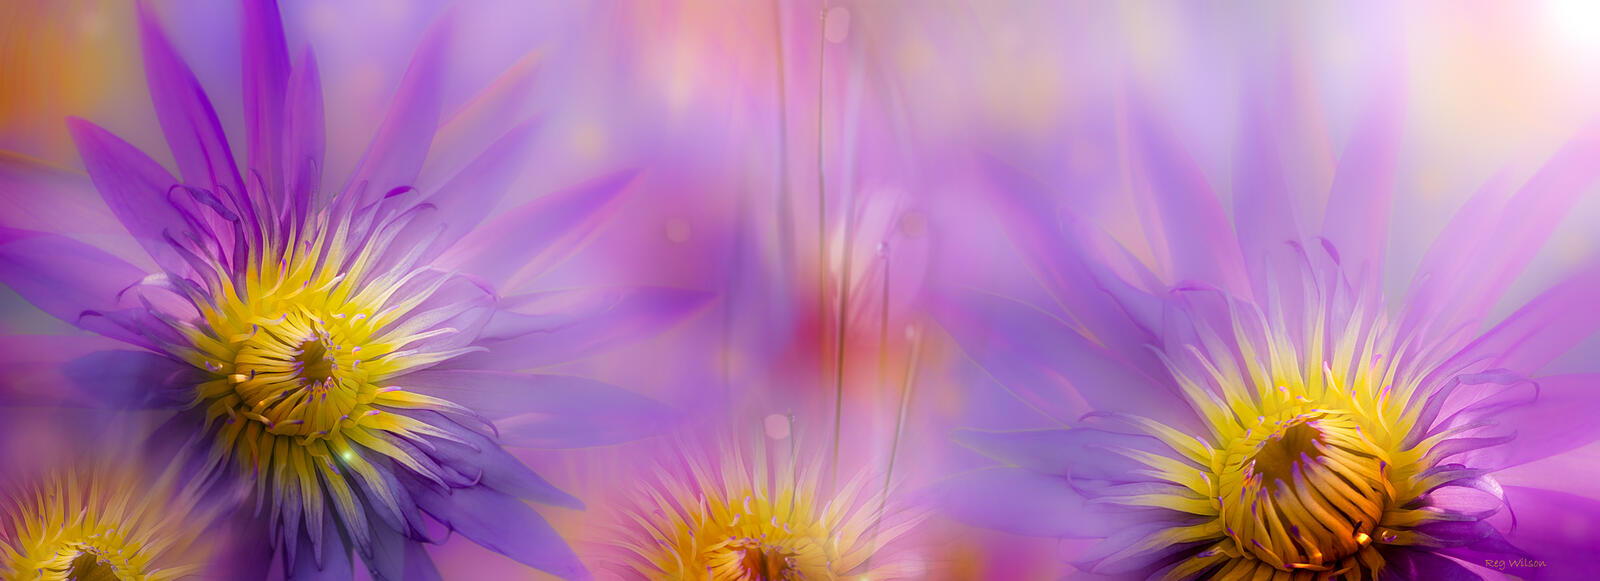 Бесплатное фото Размытые цветки лотоса